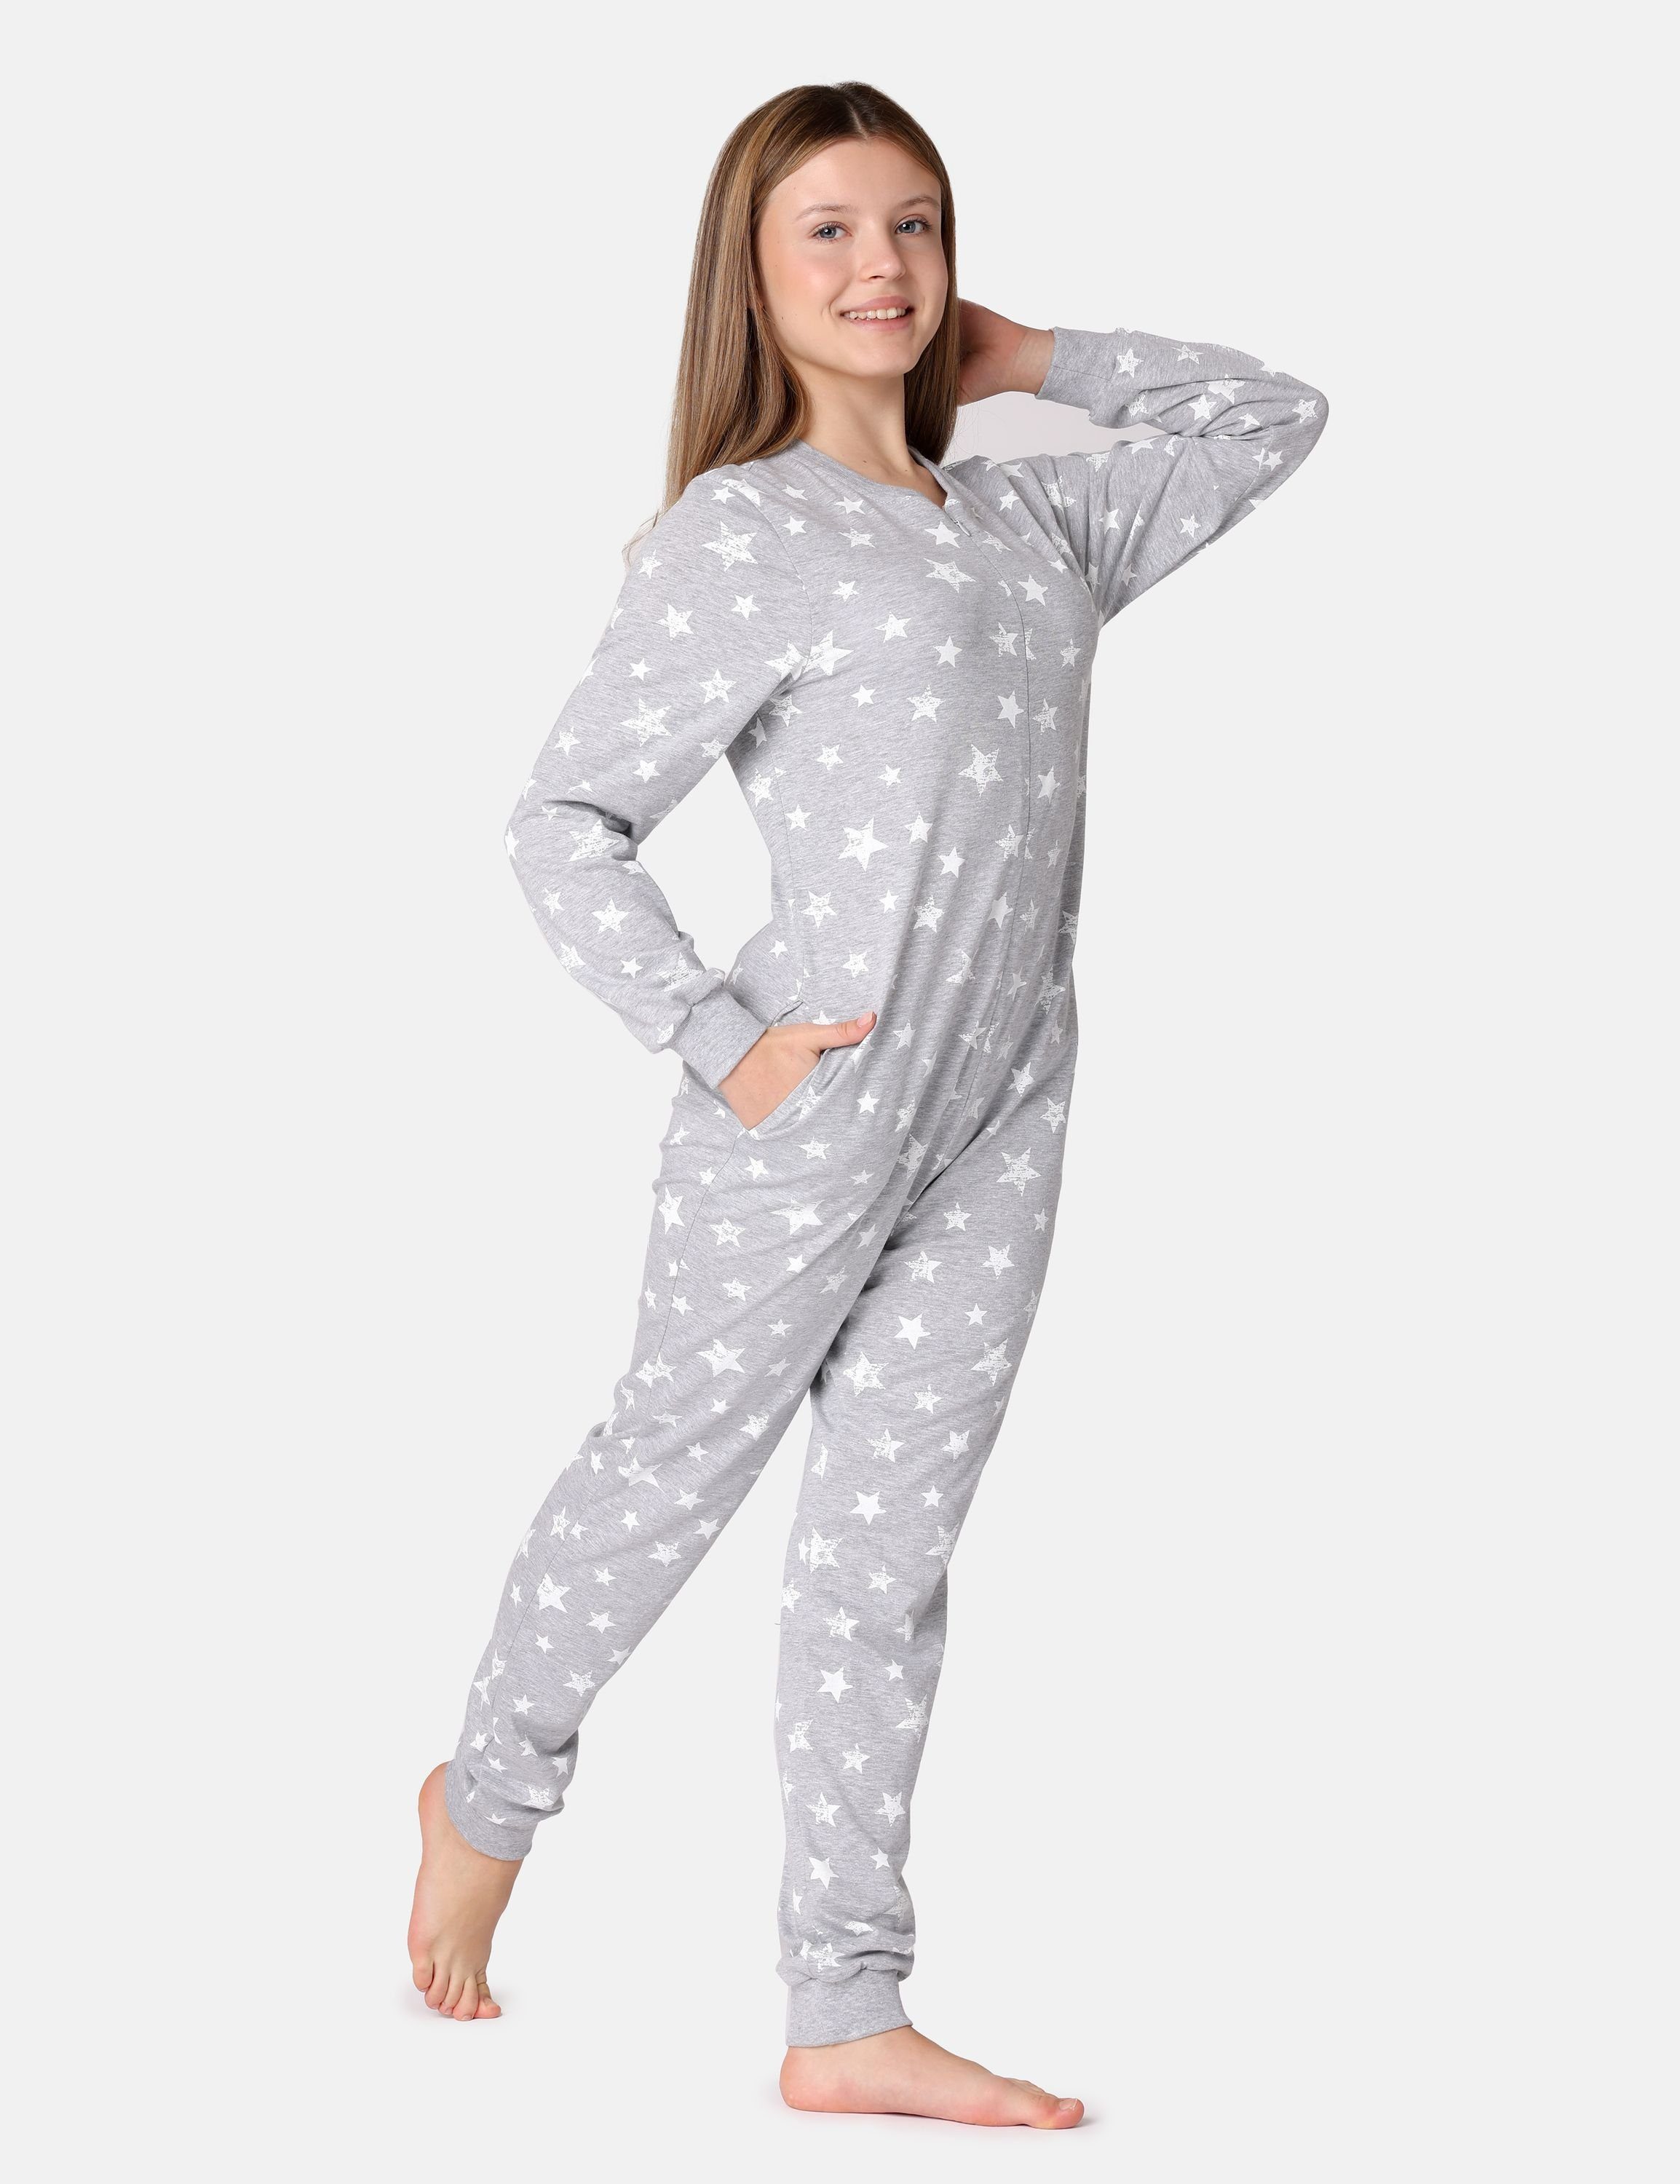 Jugend Melange/Ecru MS10-235 Schlafoverall Schlafanzug Mädchen Style Schlafanzug Merry Sterne